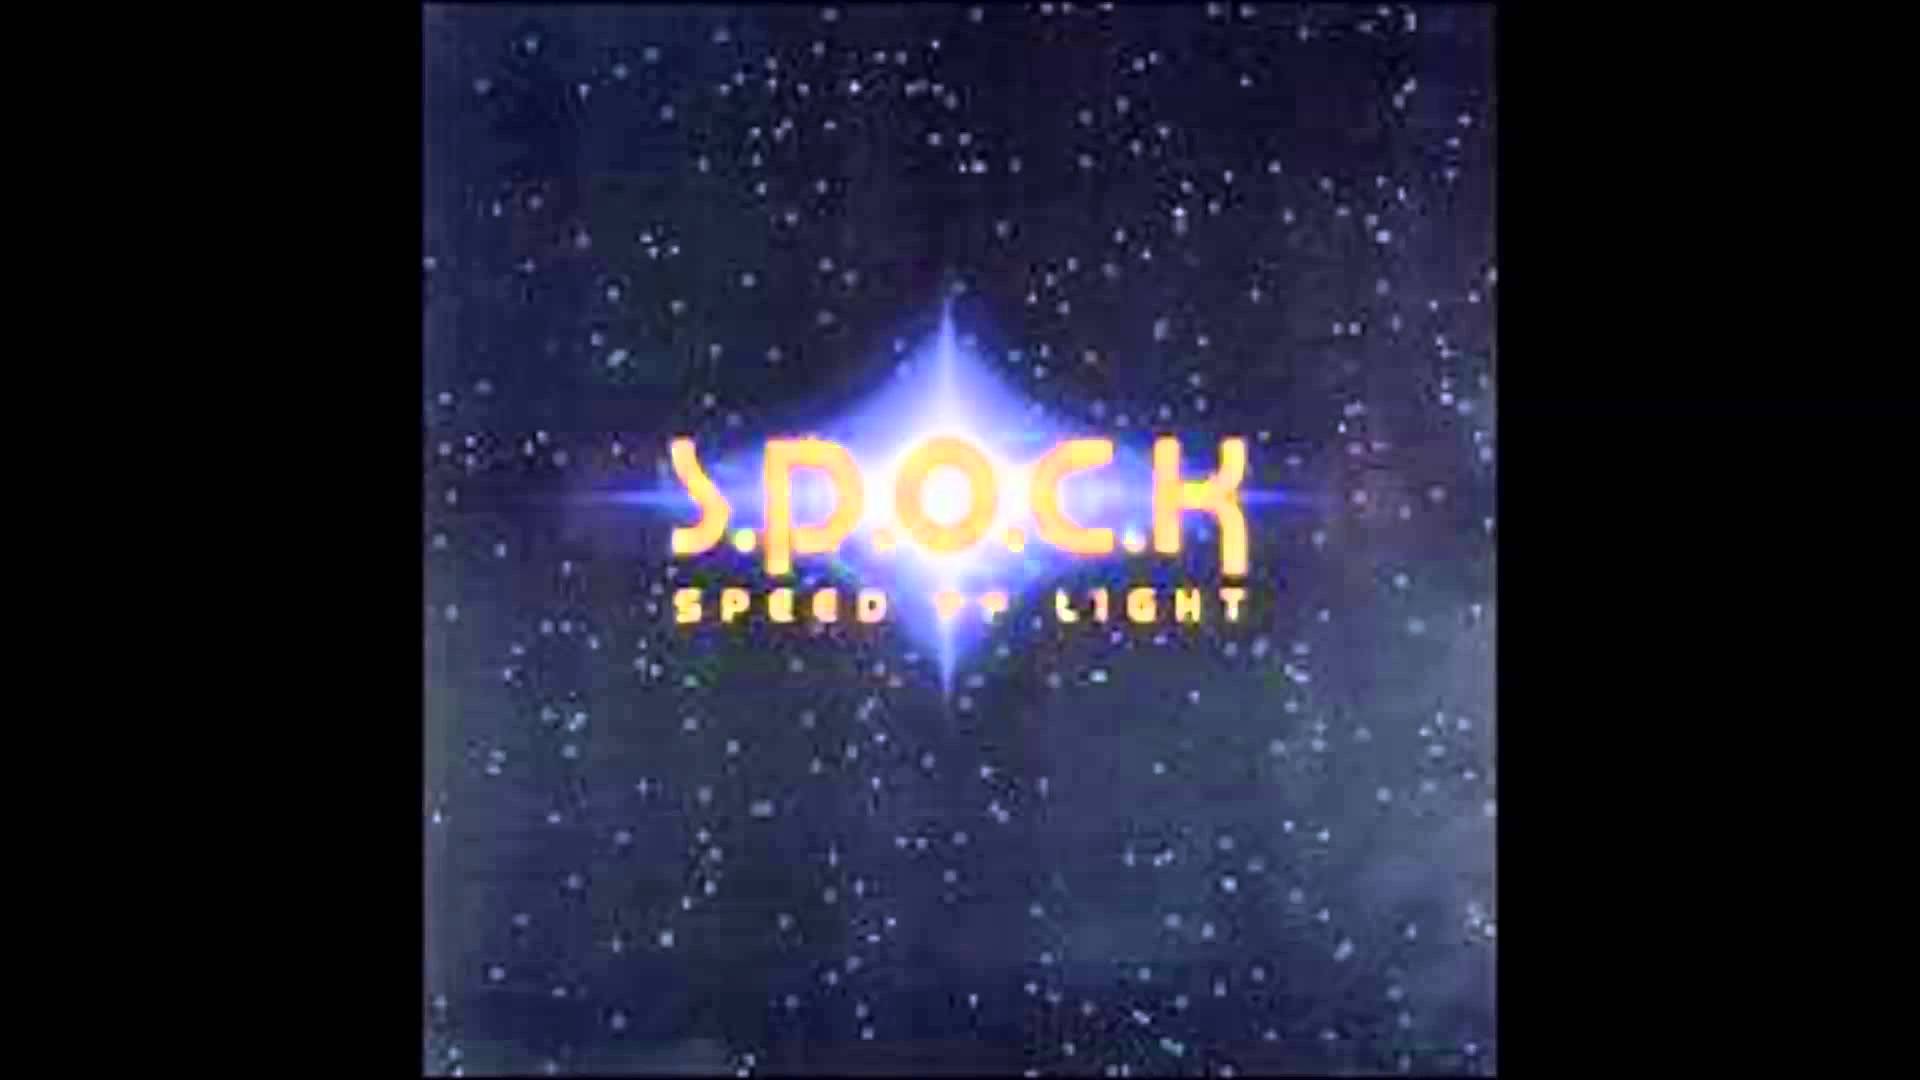 SPOCK - Speed of Light - YouTube